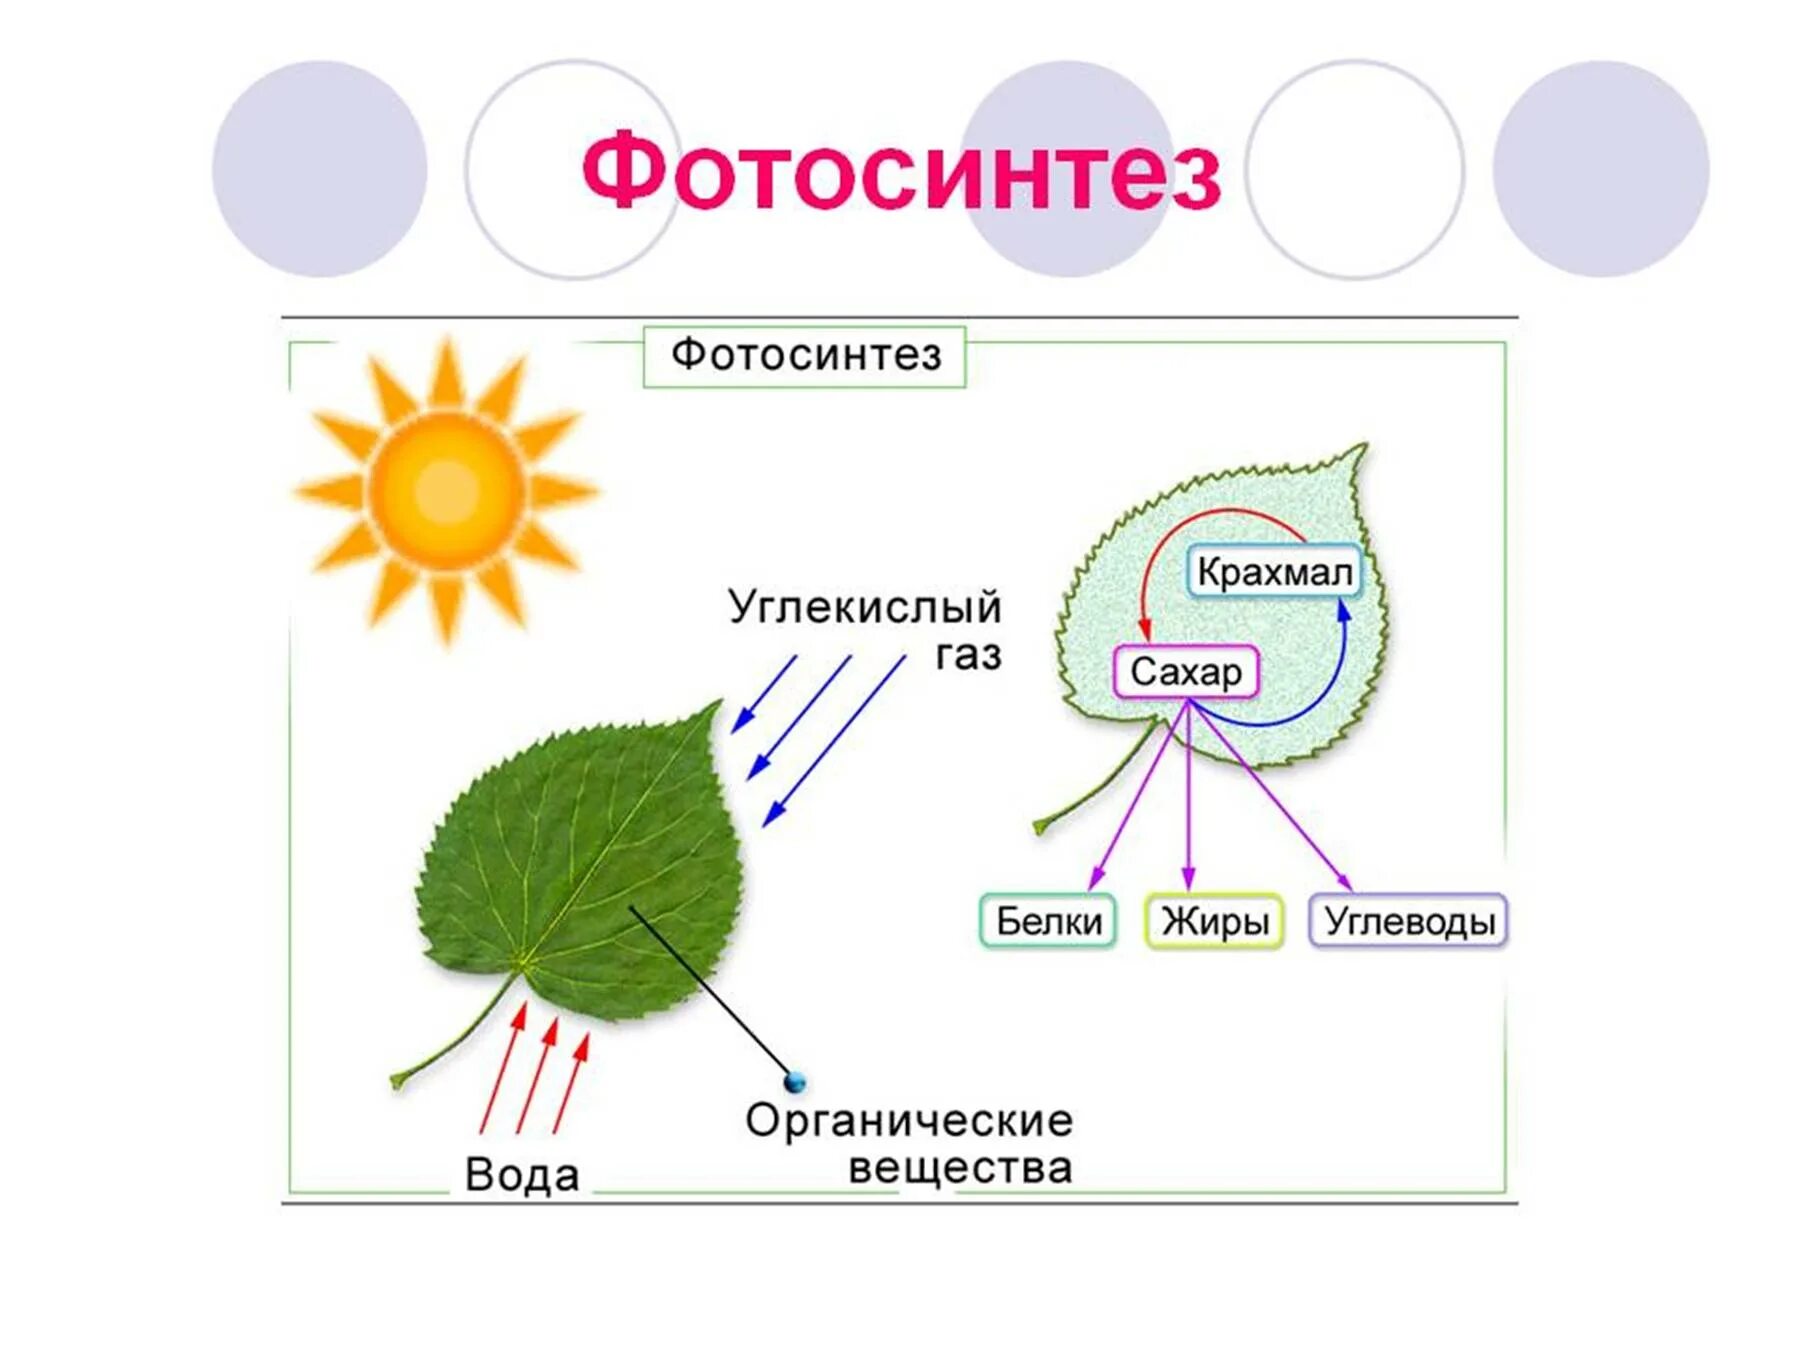 15 дыхание и обмен веществ у растений. Процесс фотосинтеза в биологии. Процесс фотосинтеза рисунок. Схема фотосинтеза у растений. Процесс фотосинтеза у растений схема.